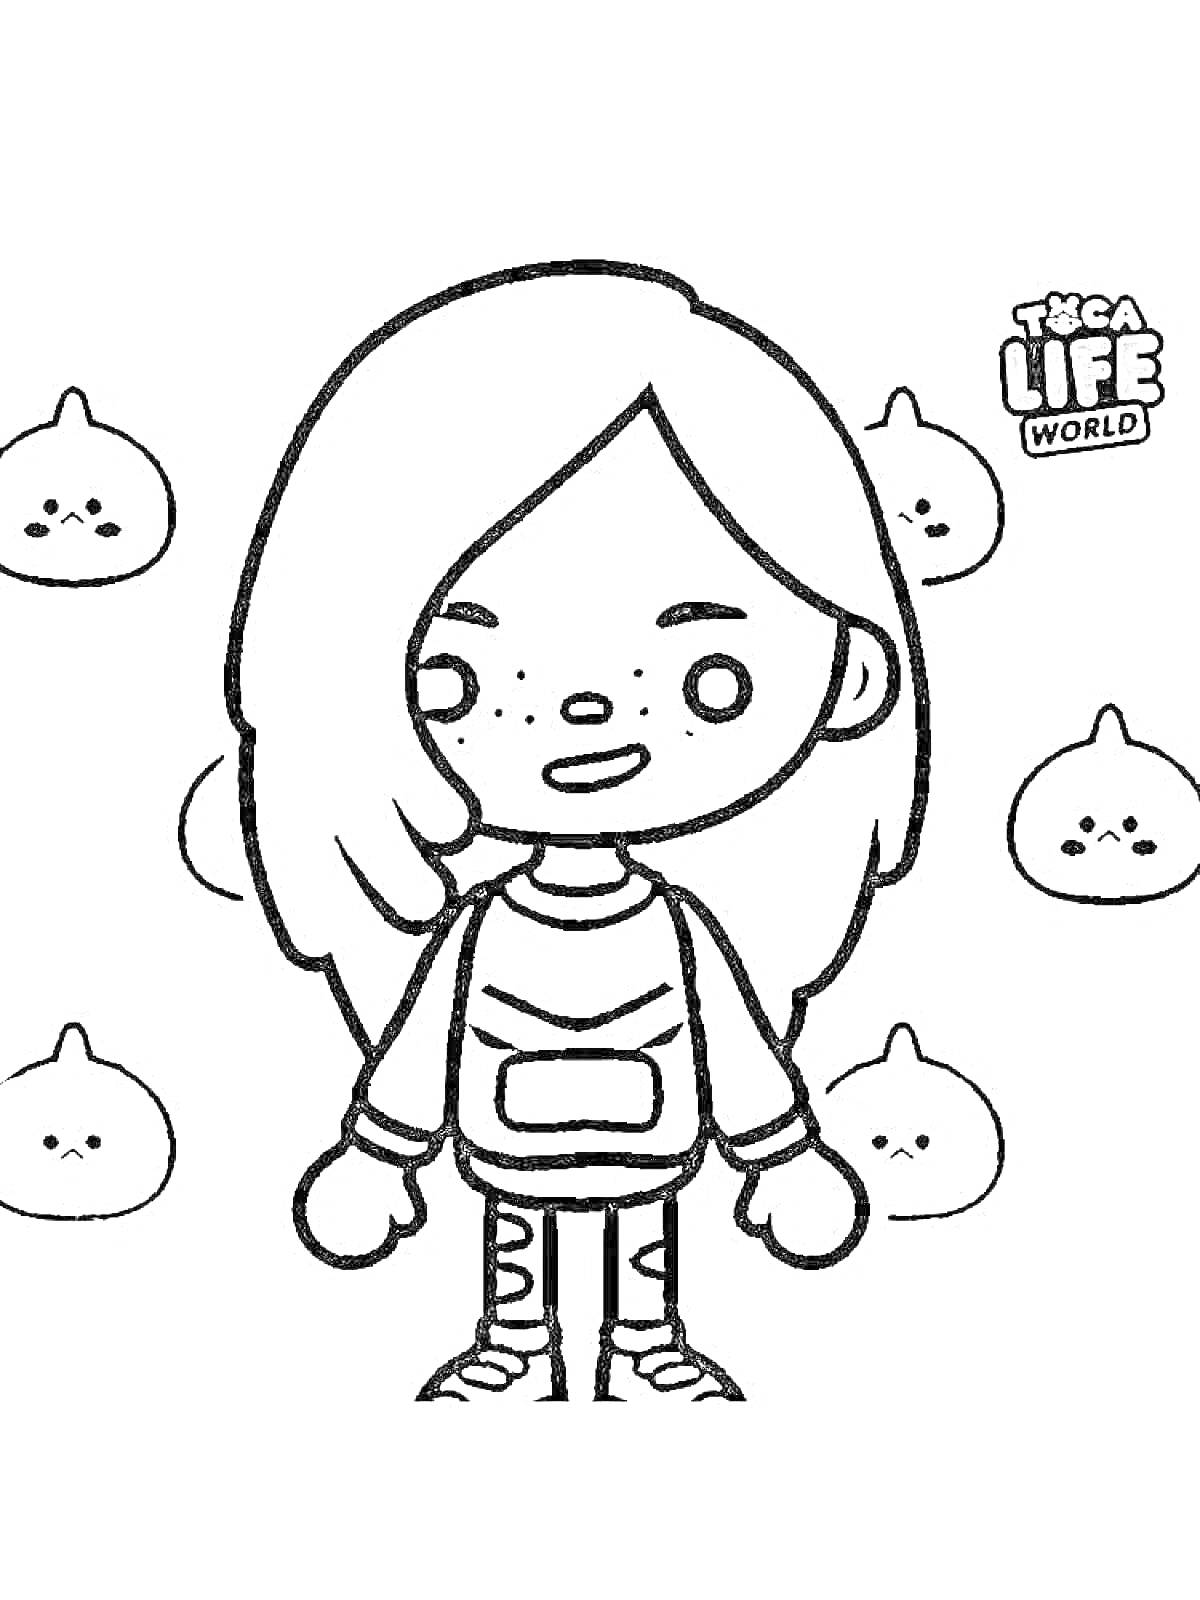 Девочка с длинными волосами и рюкзаком, на фоне персонажей Toca Life World